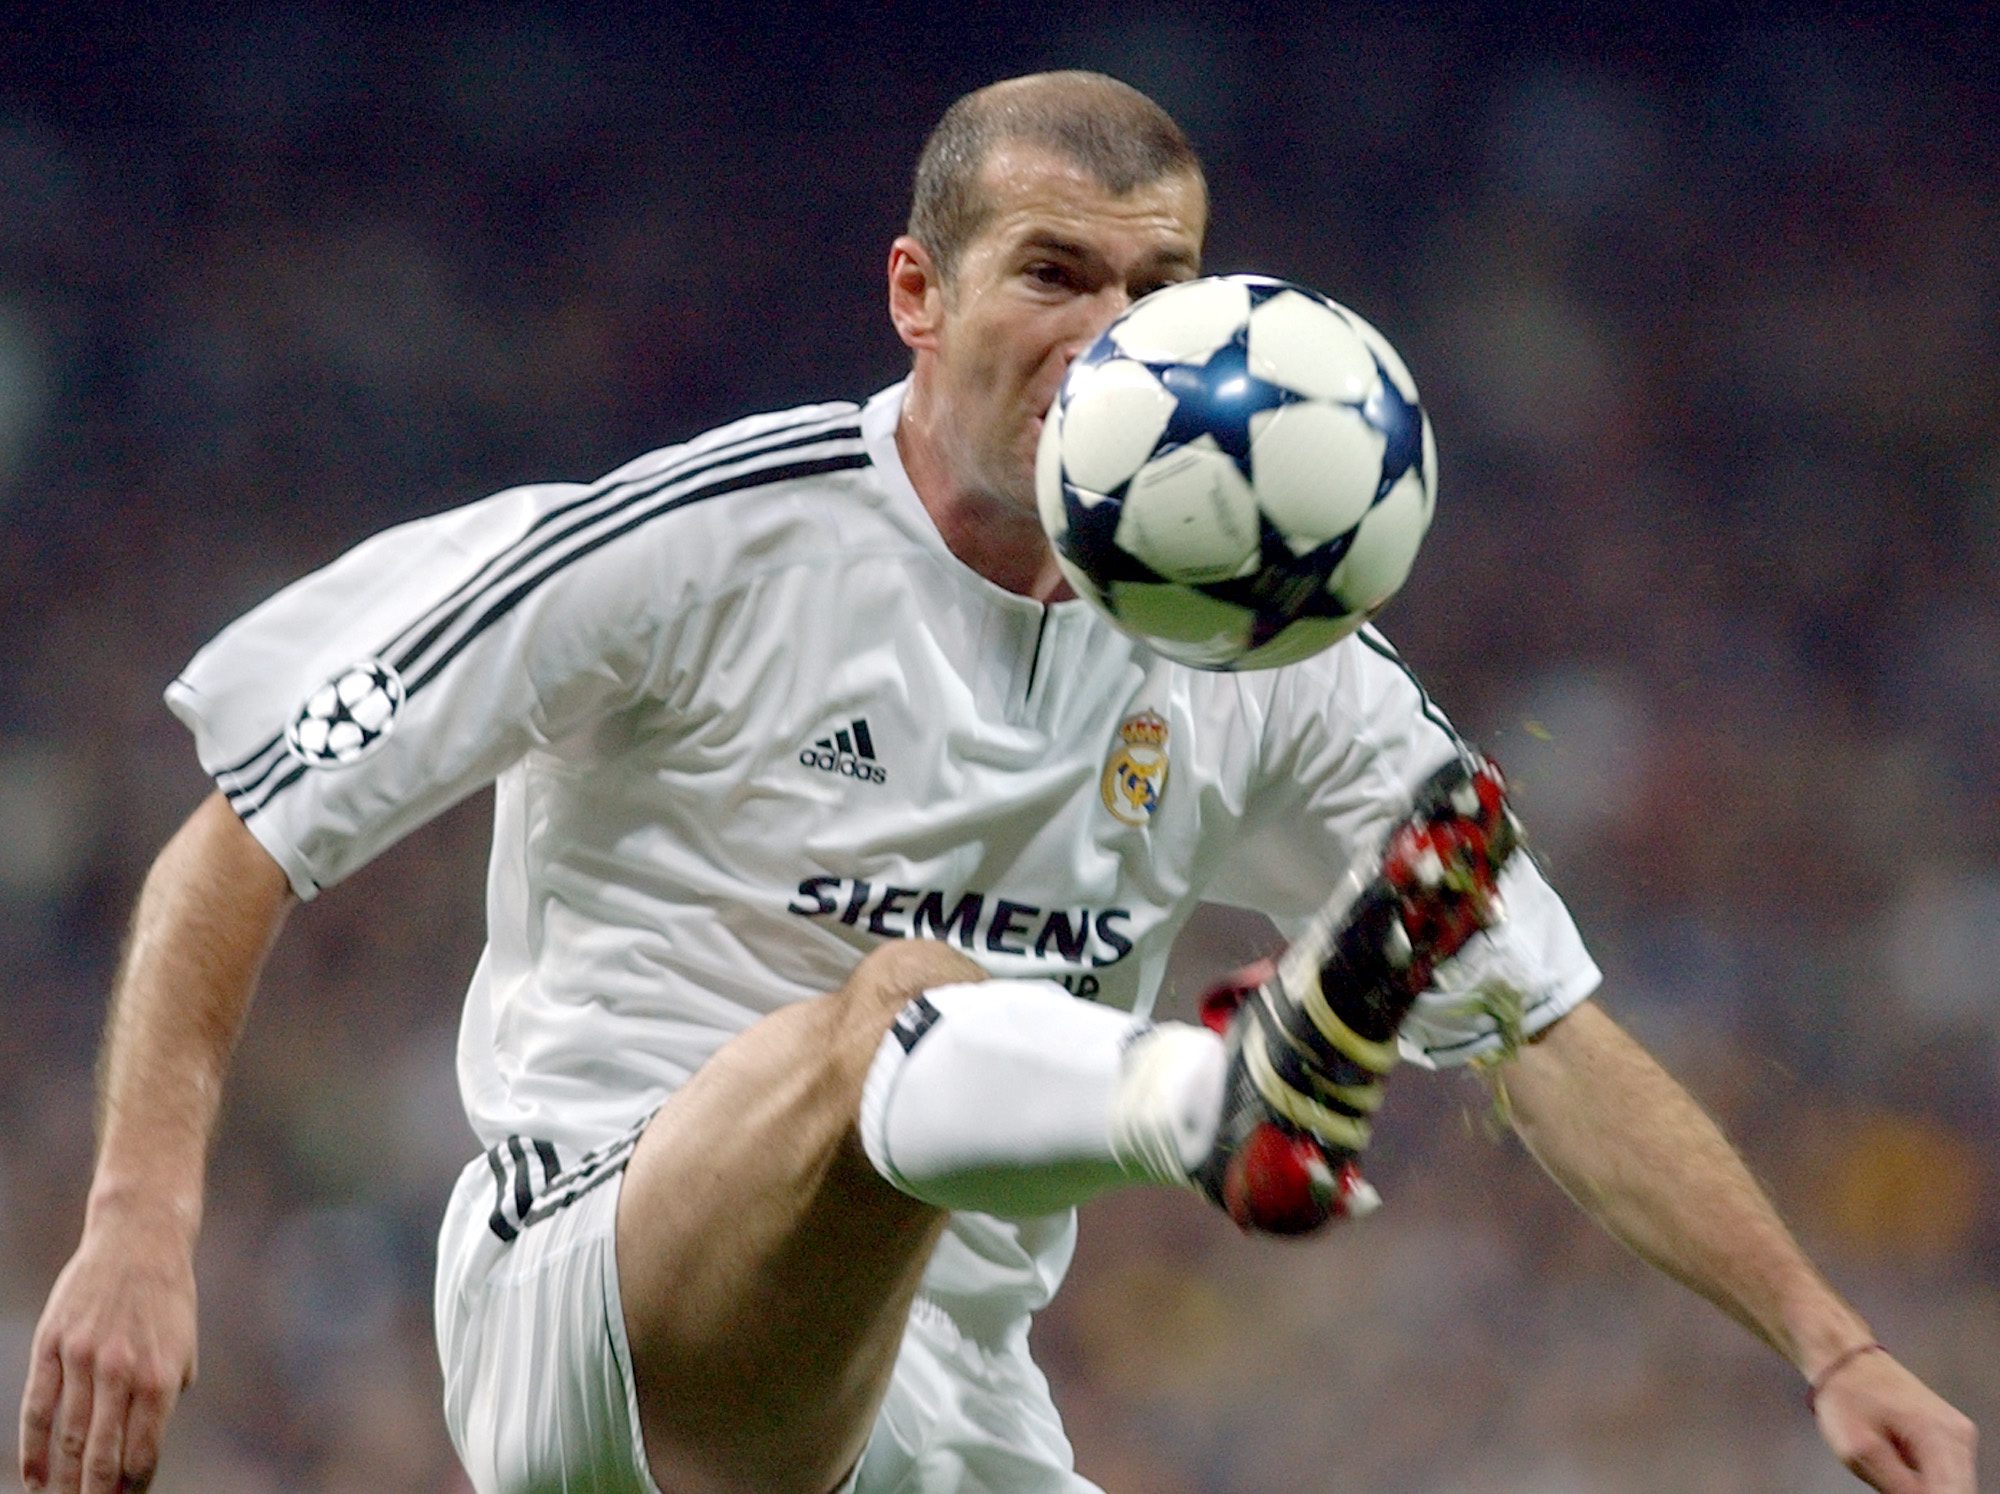 Nu jämförs Zlatan med Zidane - men vem är bäst?